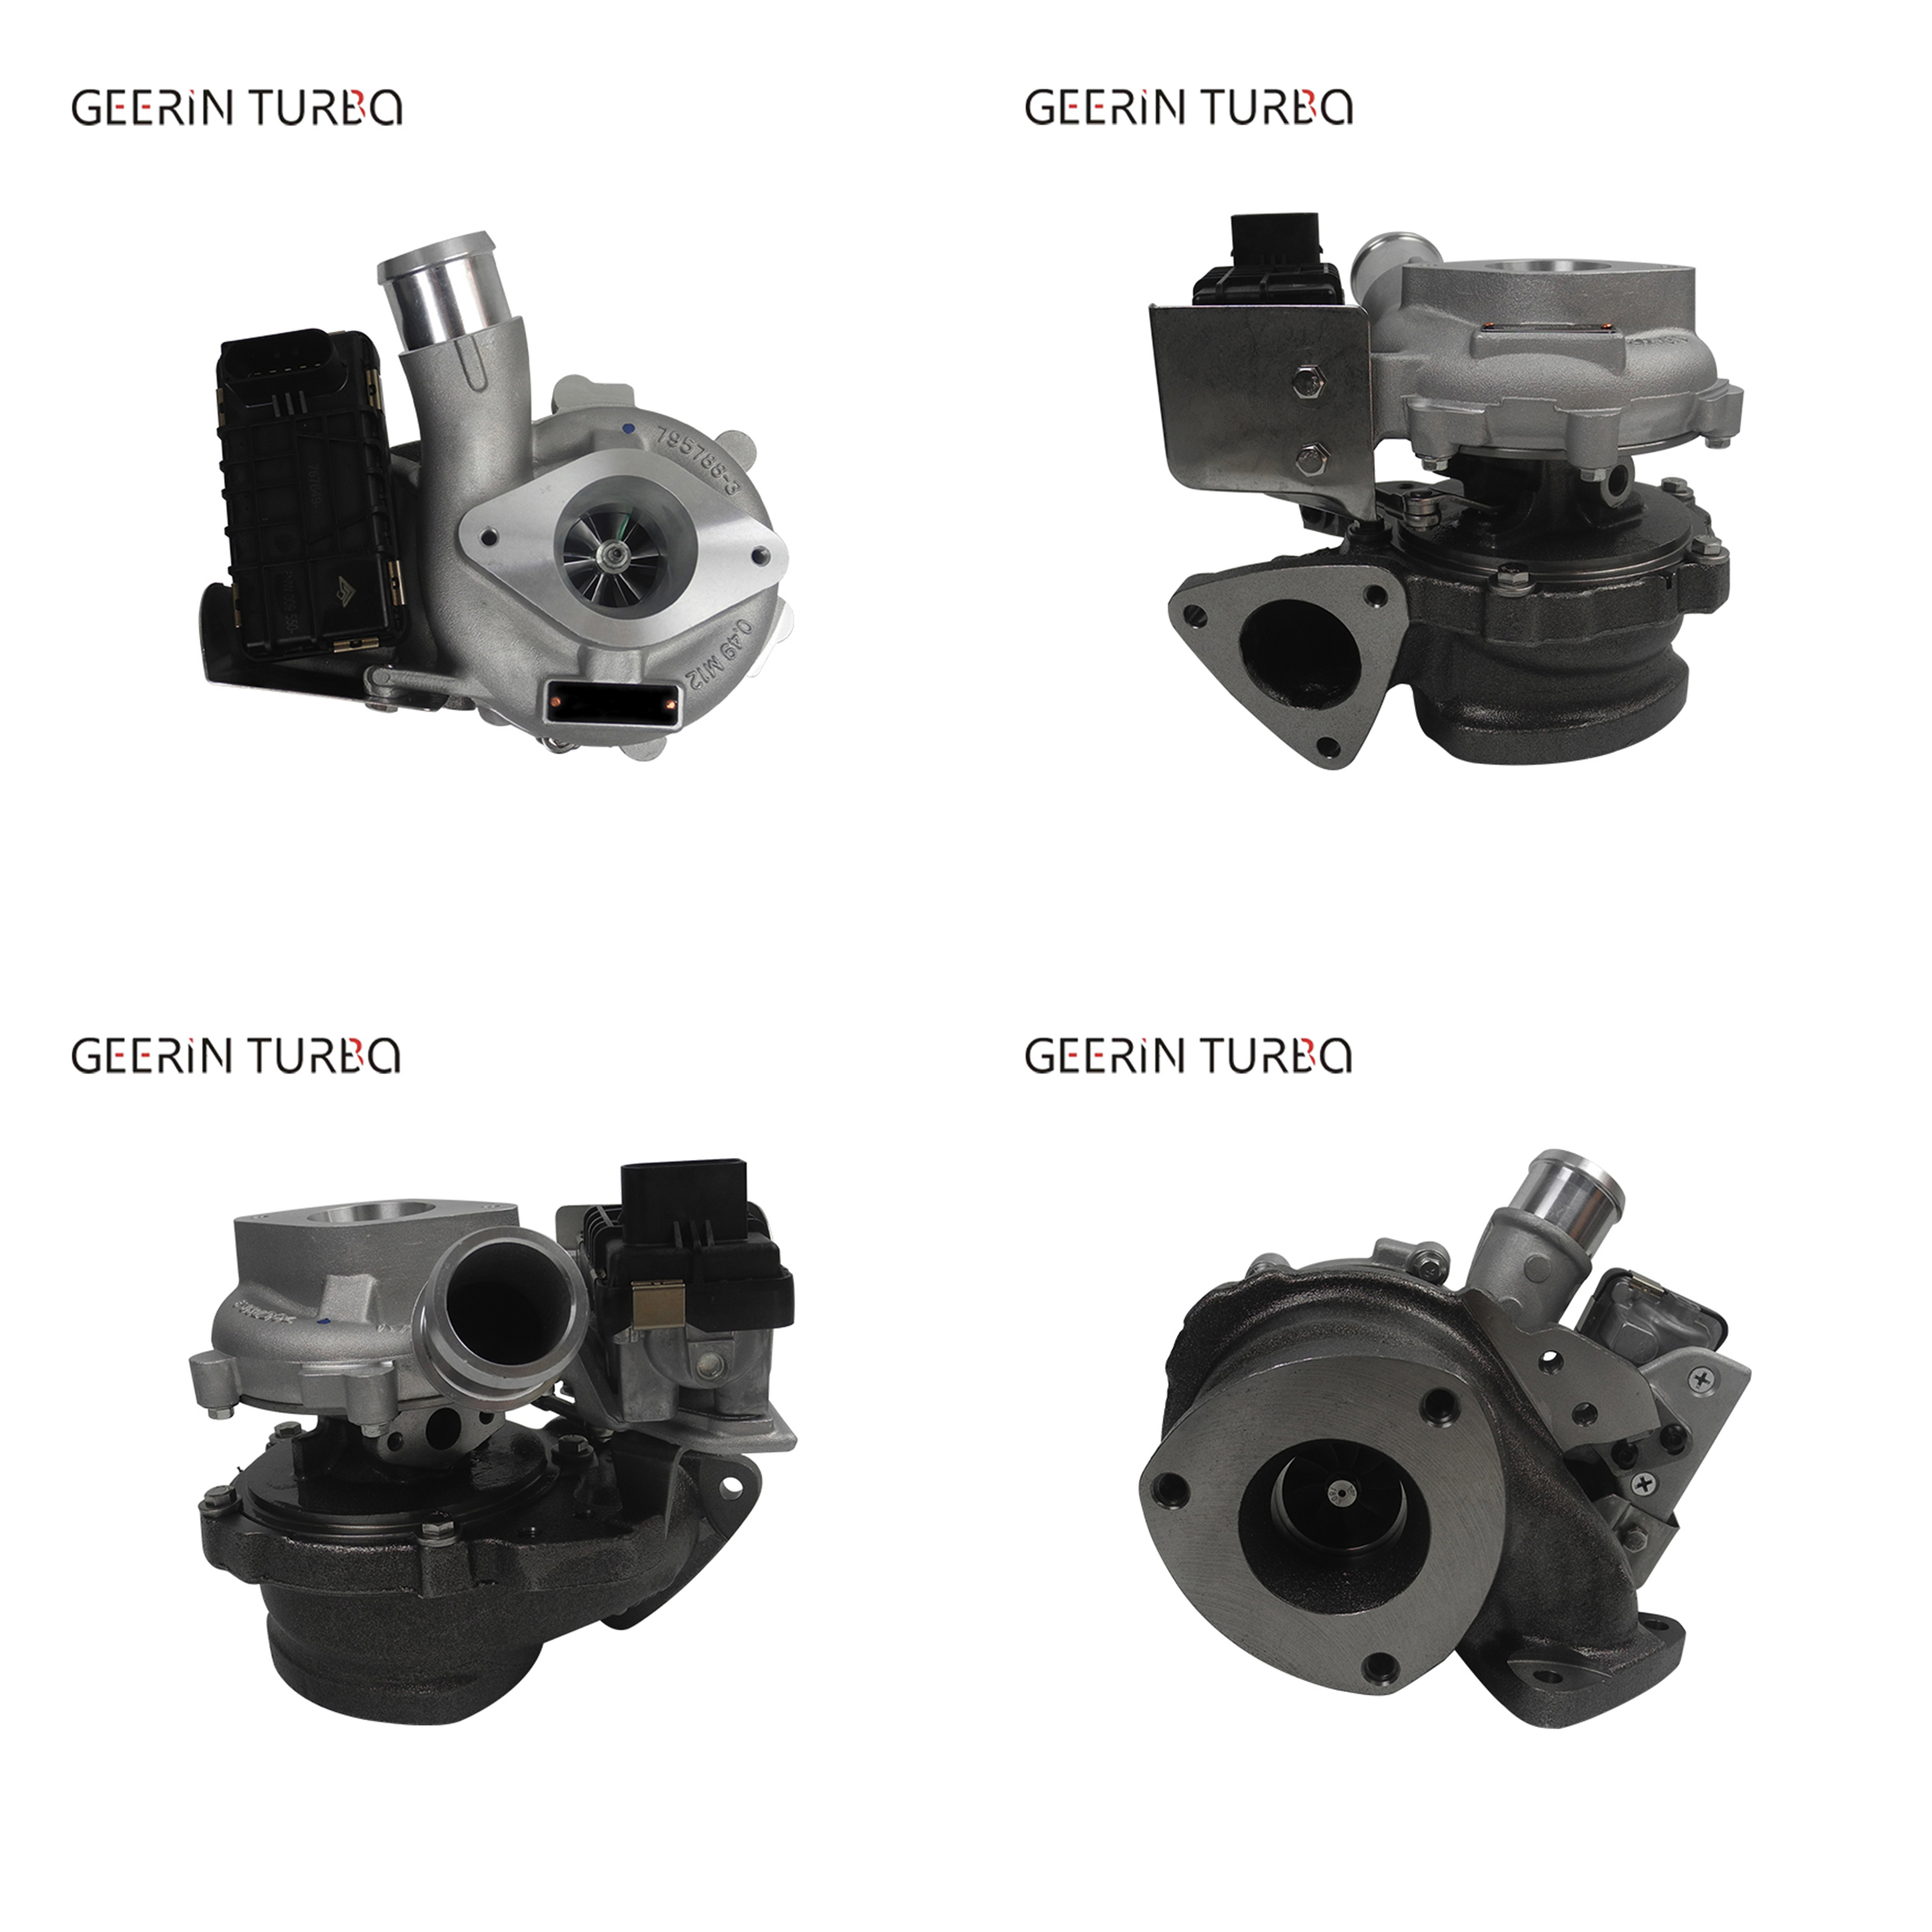 Comprar Motor del turbocompresor de GT1749V 854800-5001W para el guardabosques 2,2 TDCi de Ford, Motor del turbocompresor de GT1749V 854800-5001W para el guardabosques 2,2 TDCi de Ford Precios, Motor del turbocompresor de GT1749V 854800-5001W para el guardabosques 2,2 TDCi de Ford Marcas, Motor del turbocompresor de GT1749V 854800-5001W para el guardabosques 2,2 TDCi de Ford Fabricante, Motor del turbocompresor de GT1749V 854800-5001W para el guardabosques 2,2 TDCi de Ford Citas, Motor del turbocompresor de GT1749V 854800-5001W para el guardabosques 2,2 TDCi de Ford Empresa.